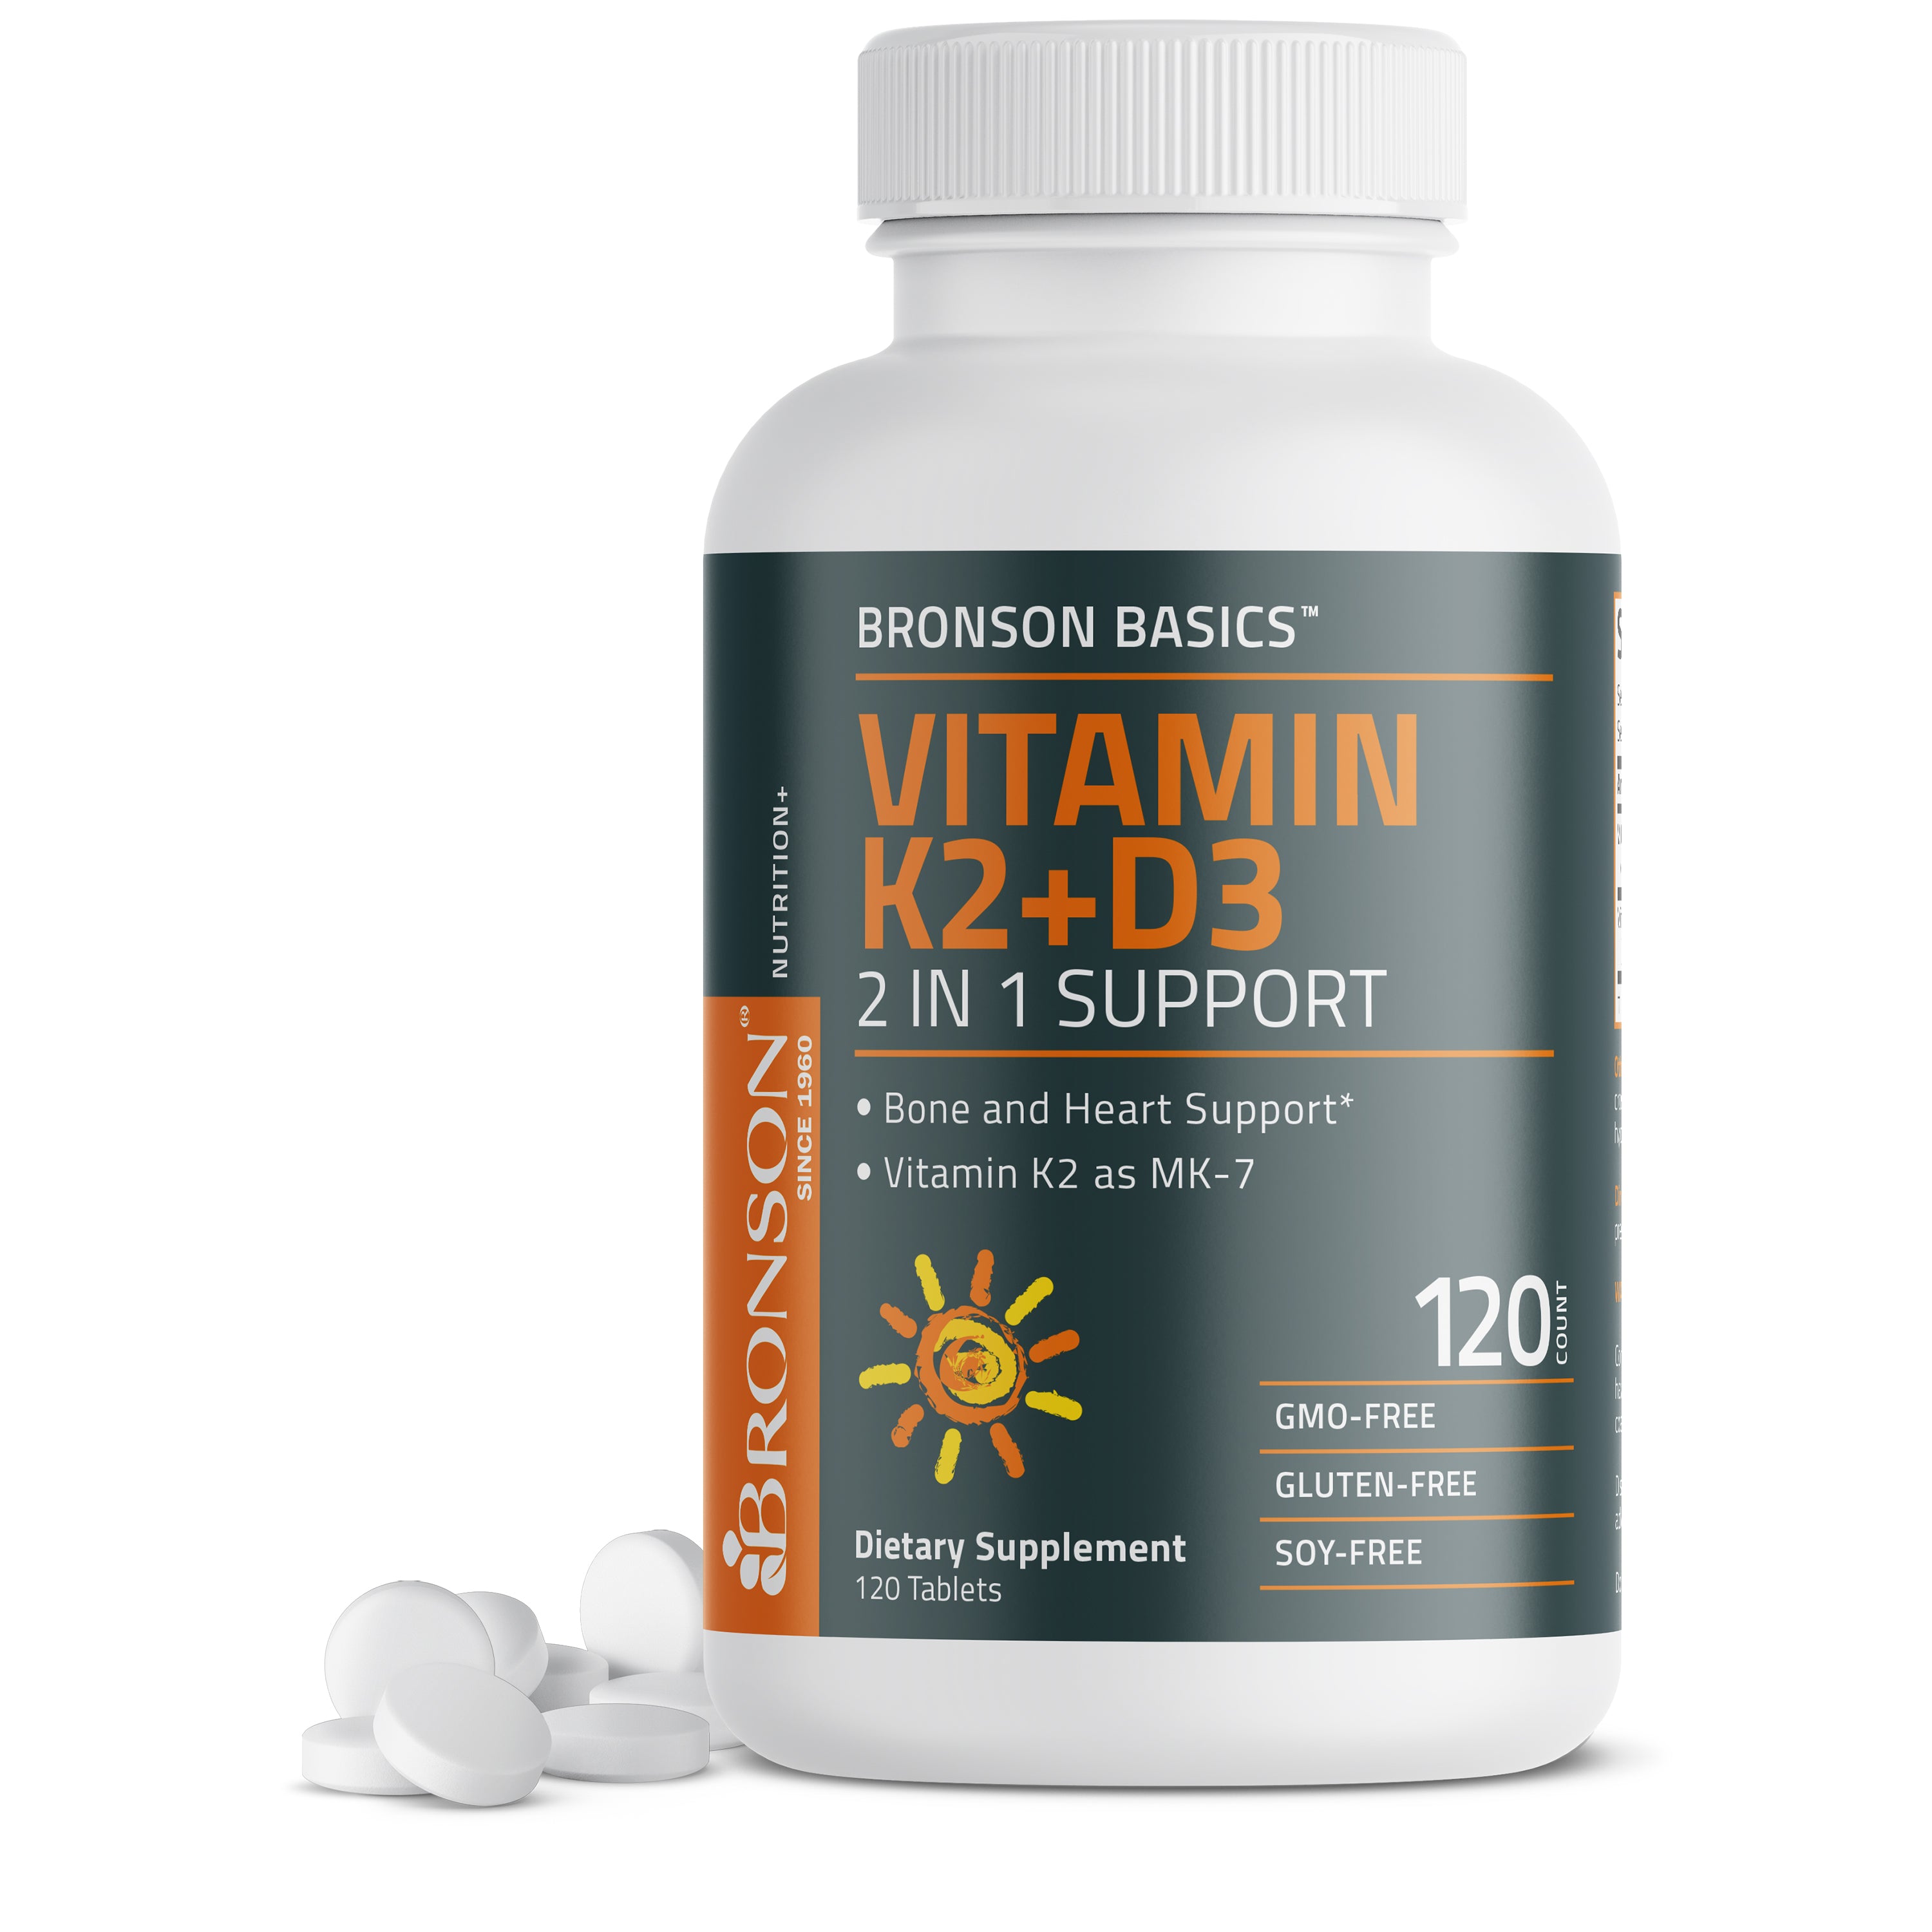 Vitamin K2 Plus D3 (MK7) view 1 of 6